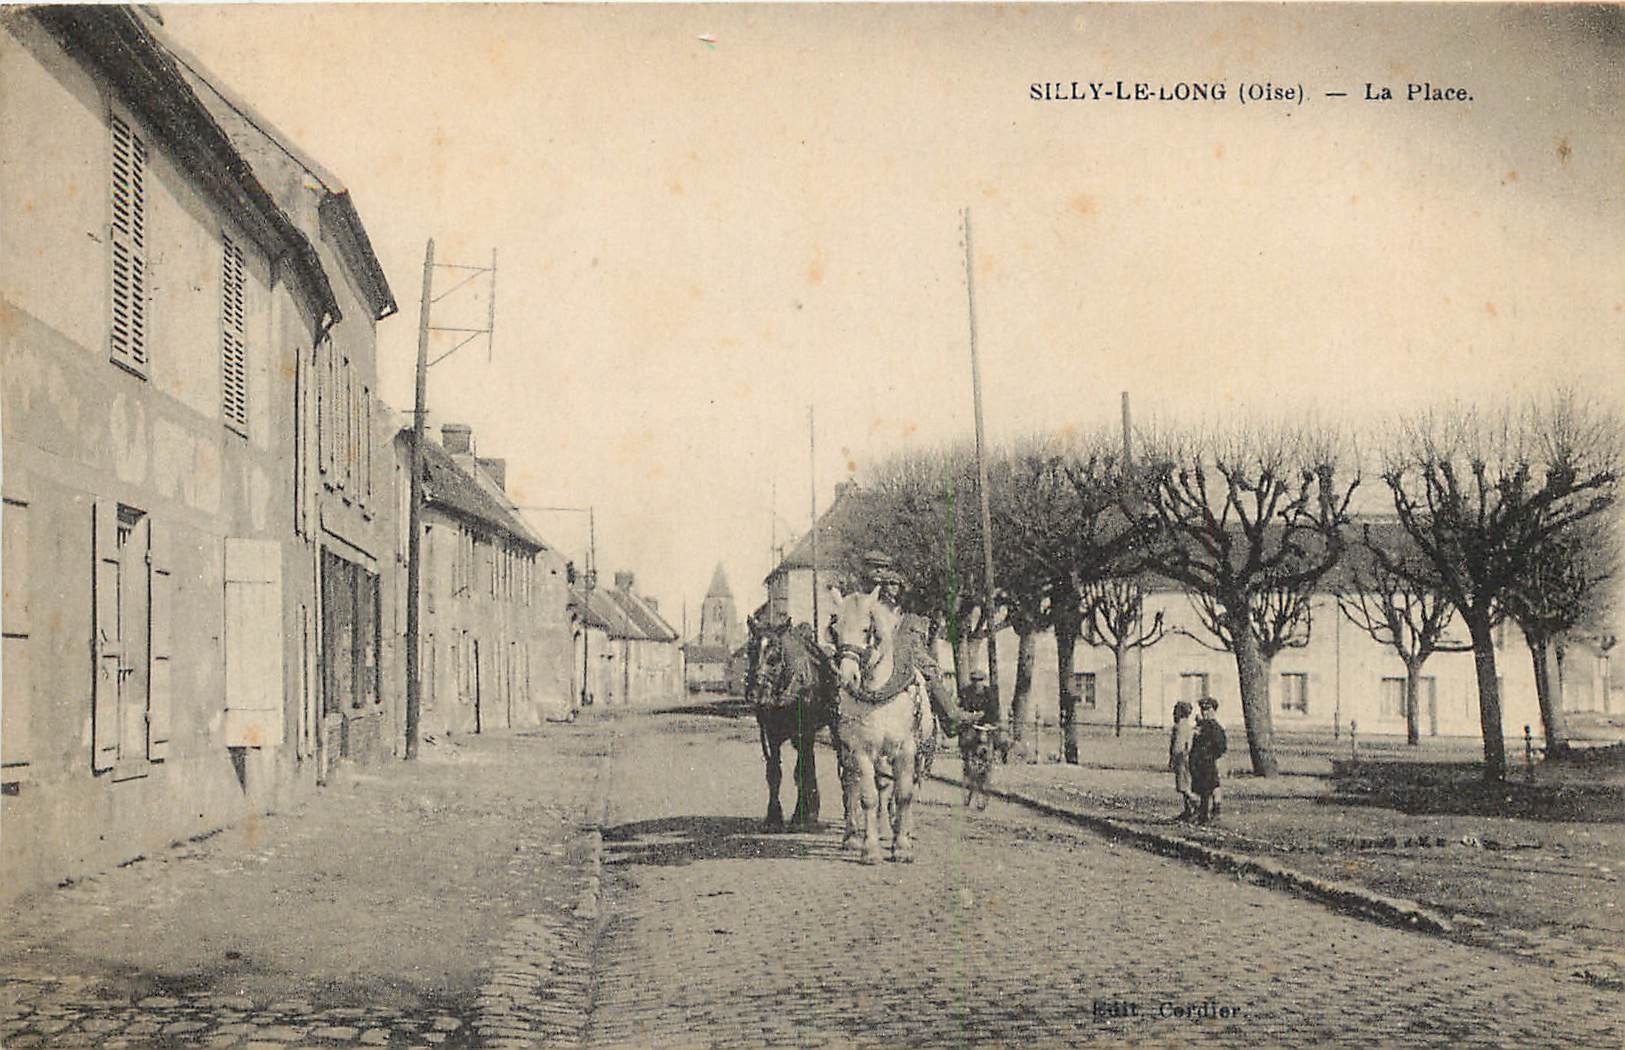 60 SILLY-LE-LONG. Chevaux de labour sur la Place 1924